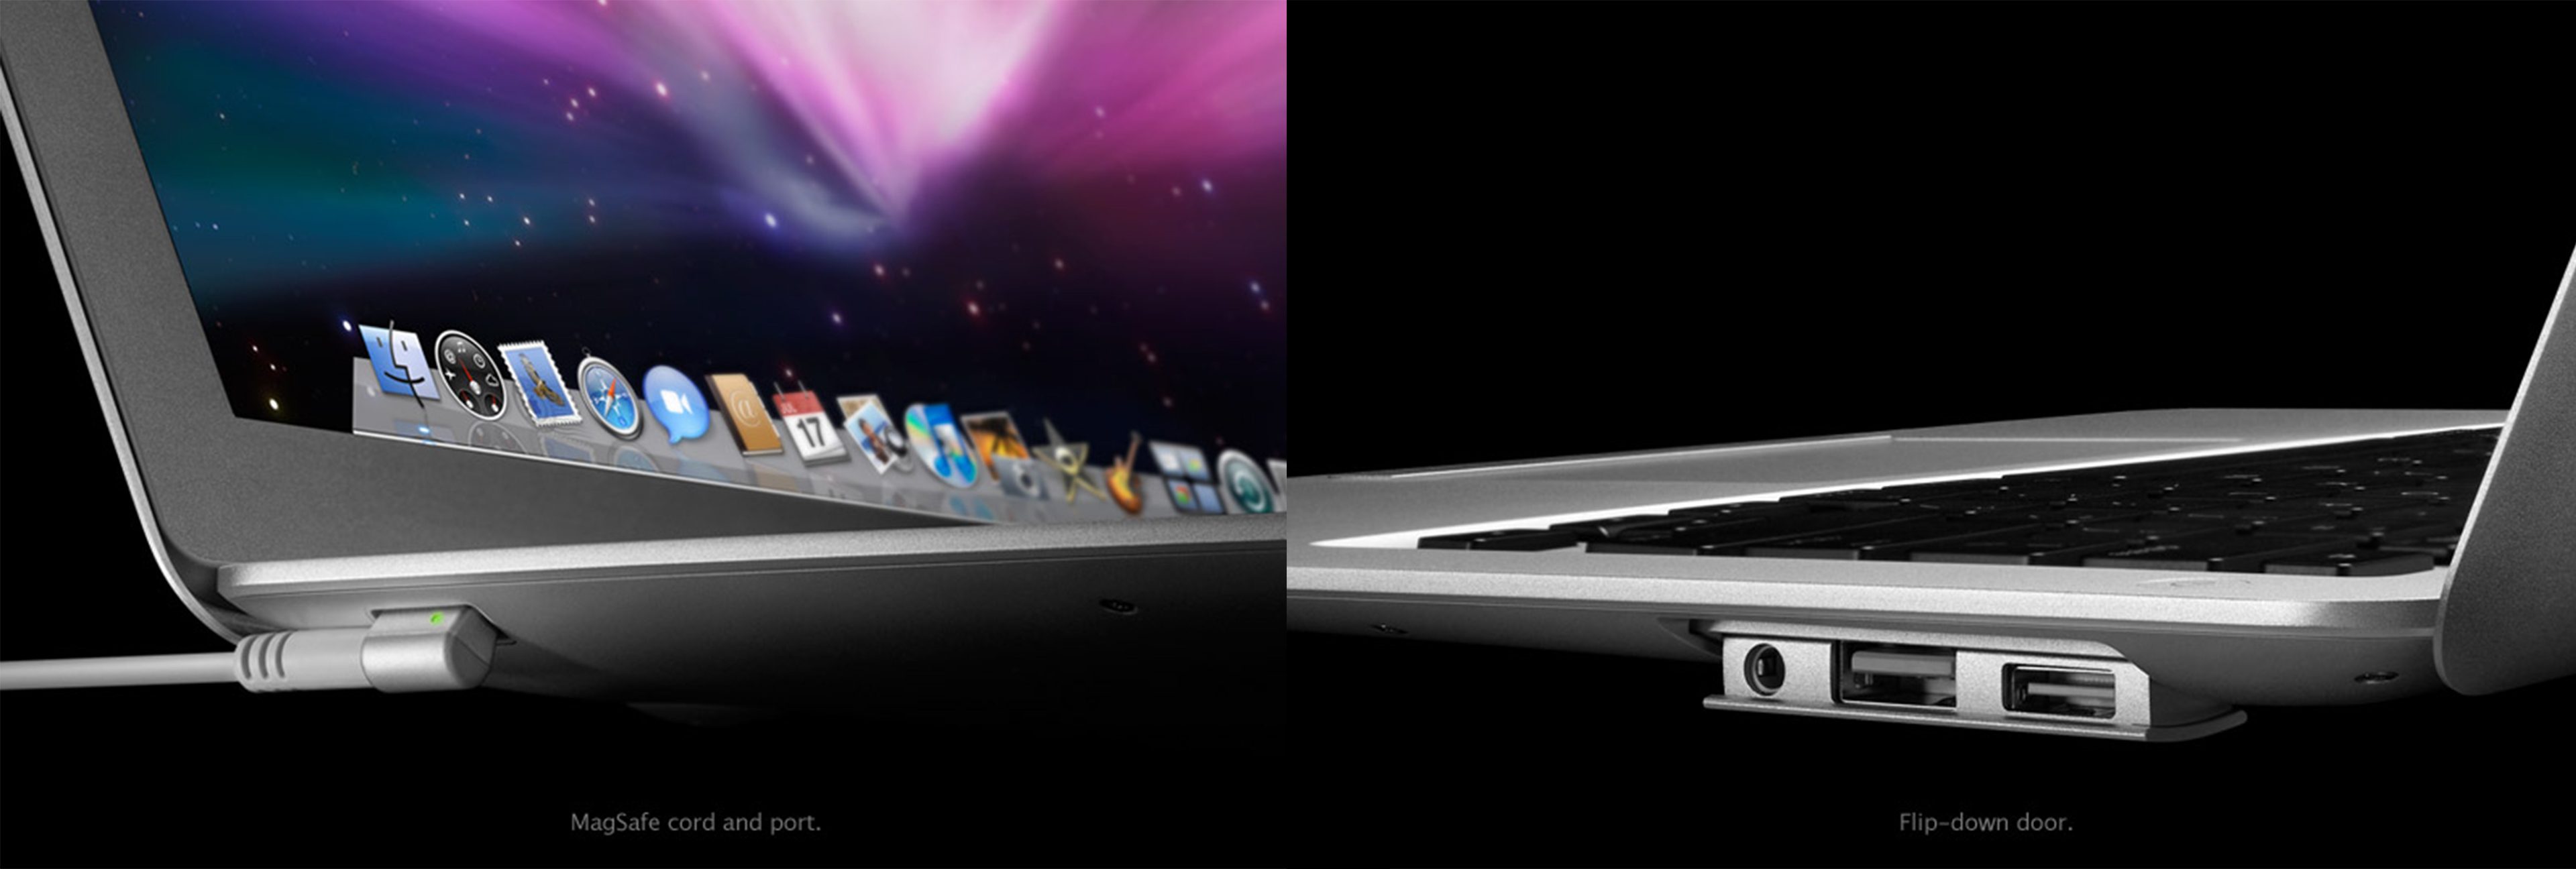 Nhìn lại 10 năm của chiếc MacBook Air gốc, mở đầu cho kỉ nguyên "không ổ đĩa"